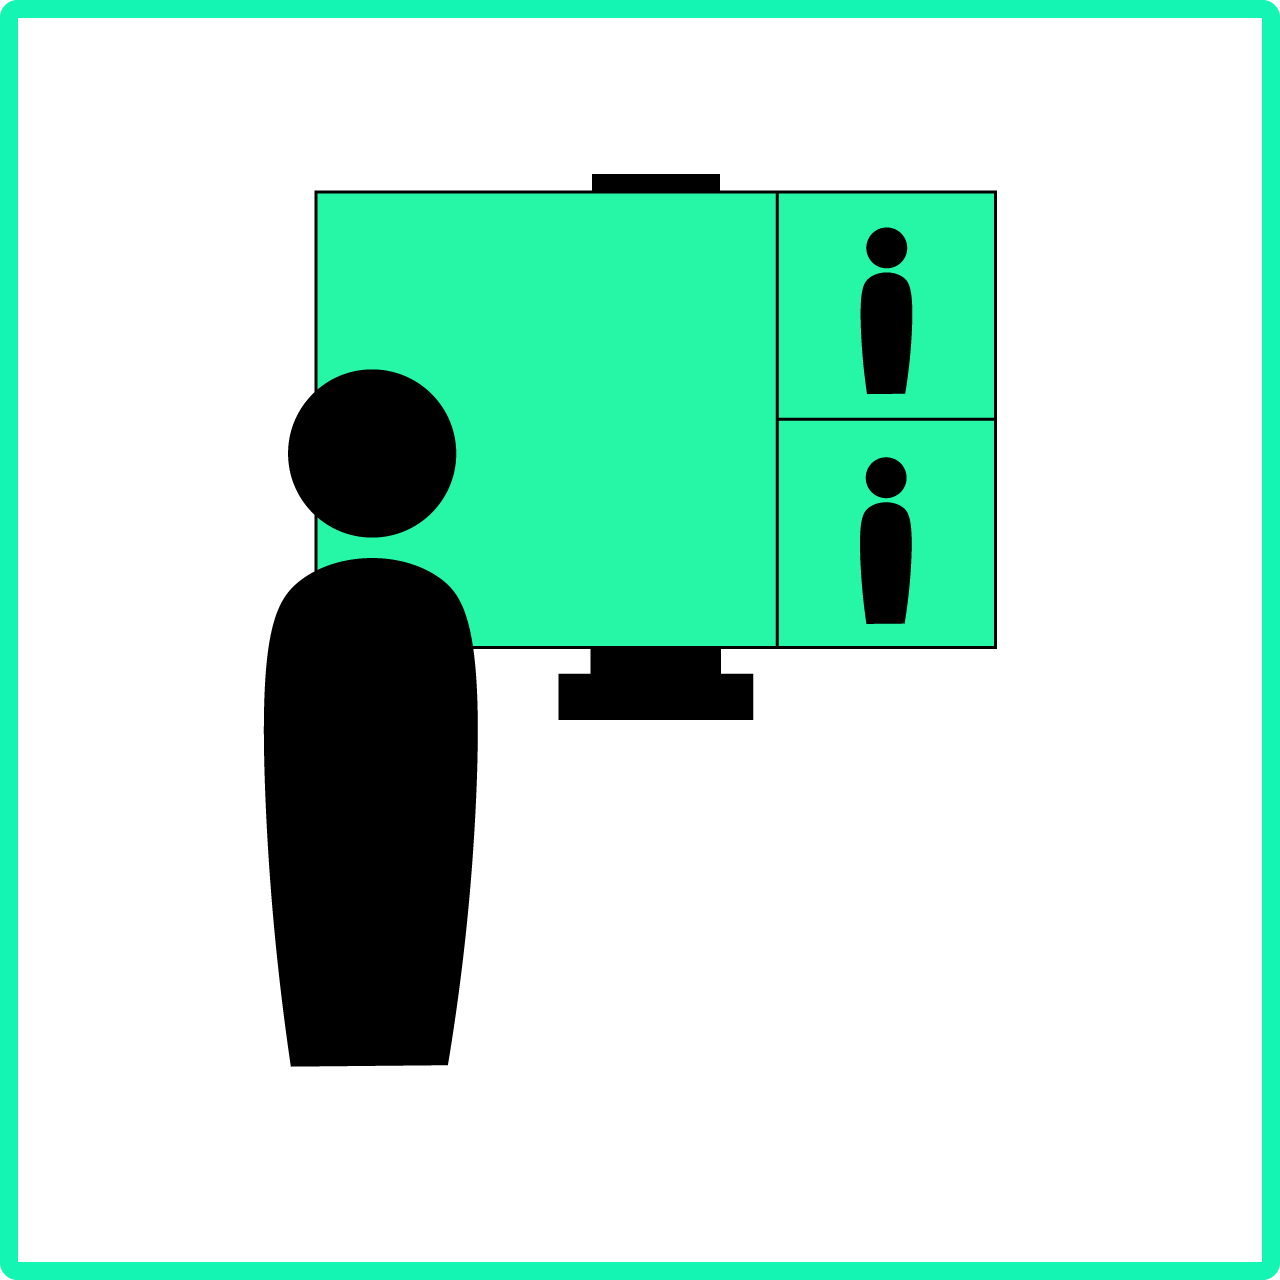 Grafik zum digitalen Lehren bestehend aus einer Person vor einem Bildschirm, auf welchem zwei weitere Personen im Videokonferenzformat zu sehen sind